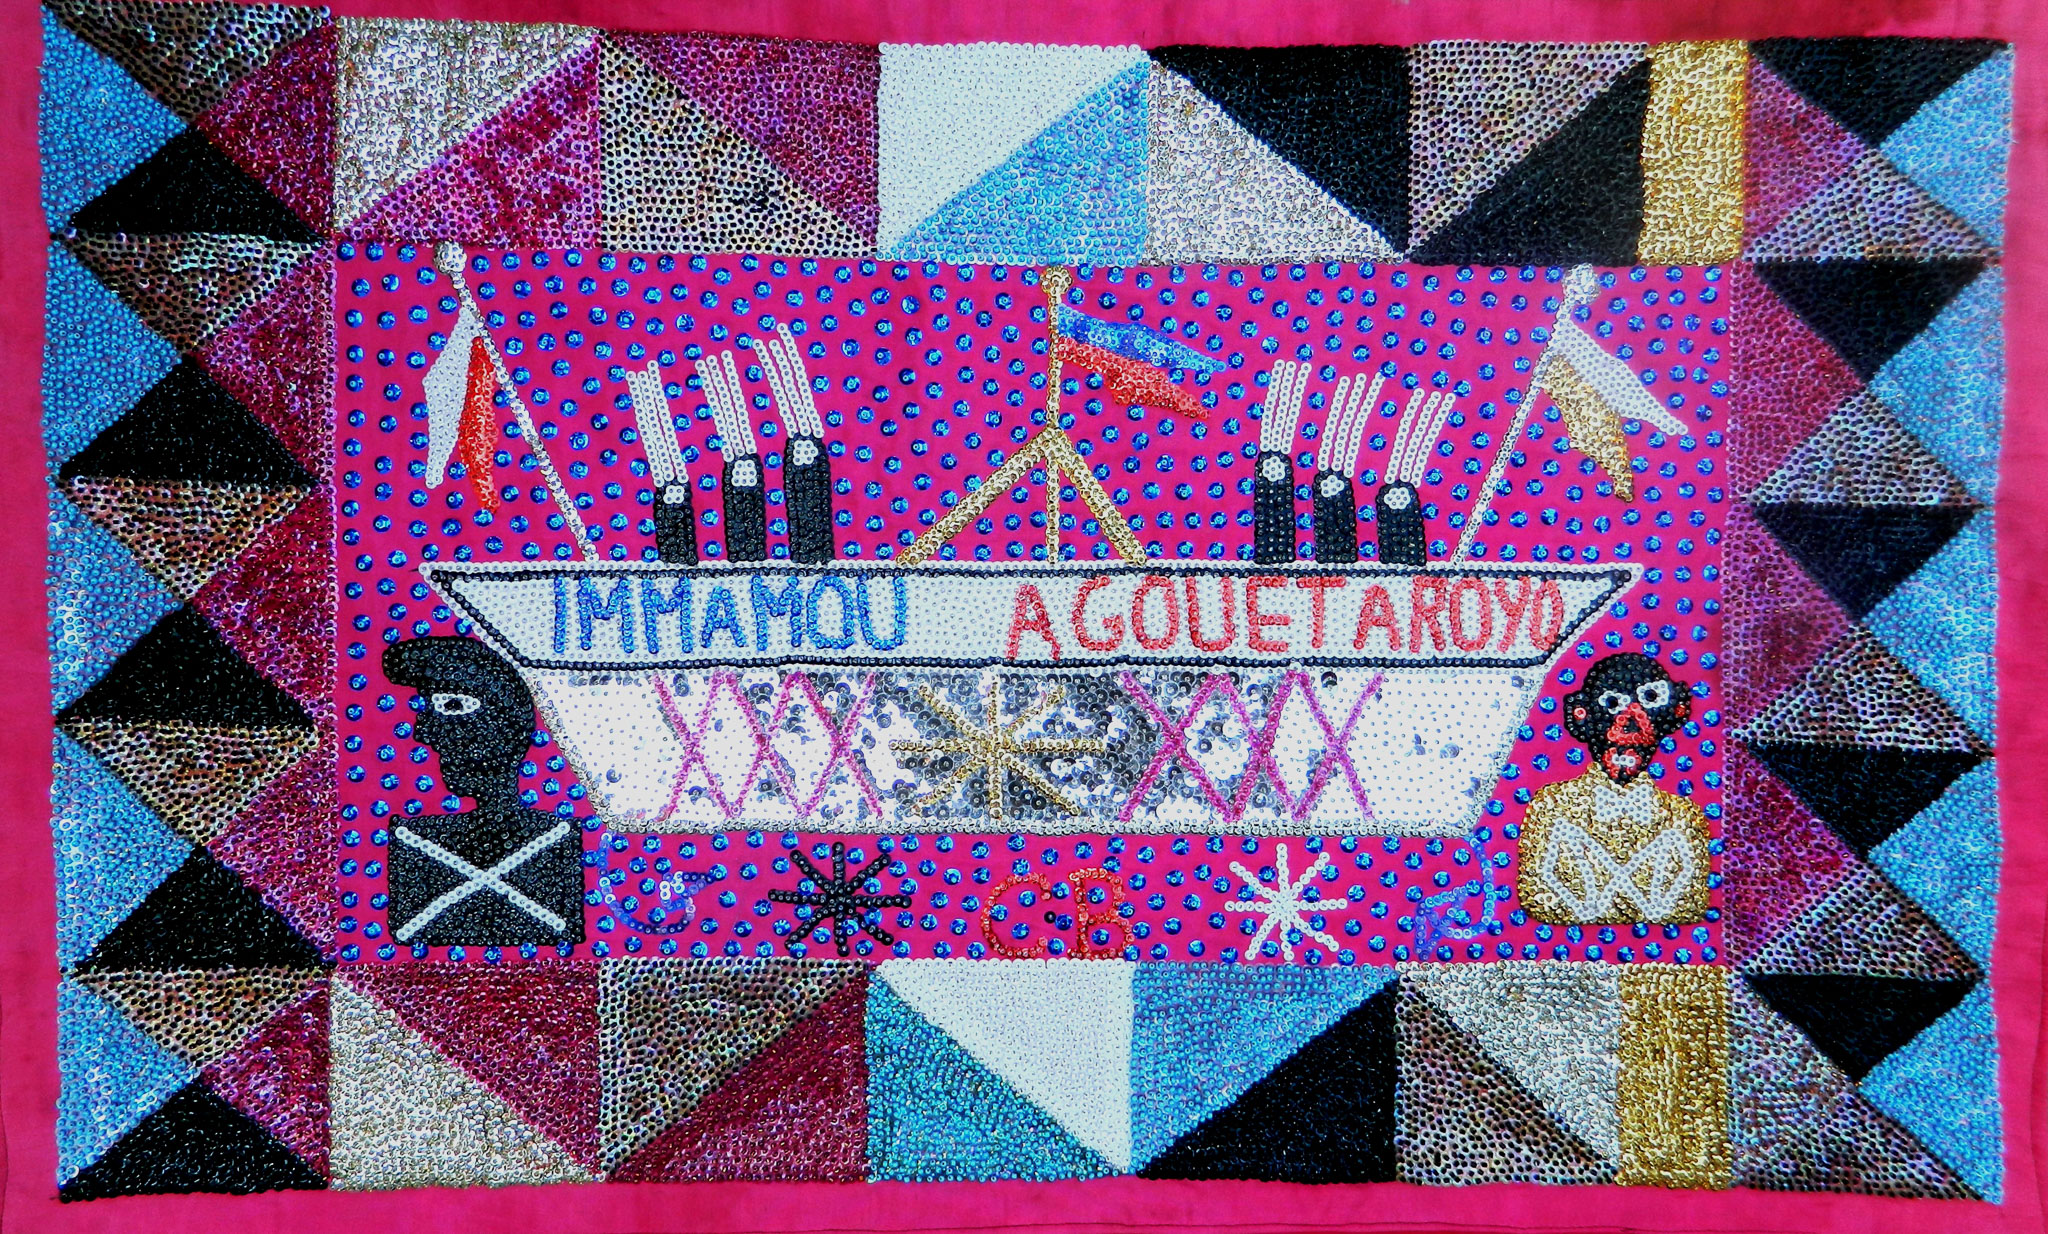 Immamou Agouet Aroyo, 1986